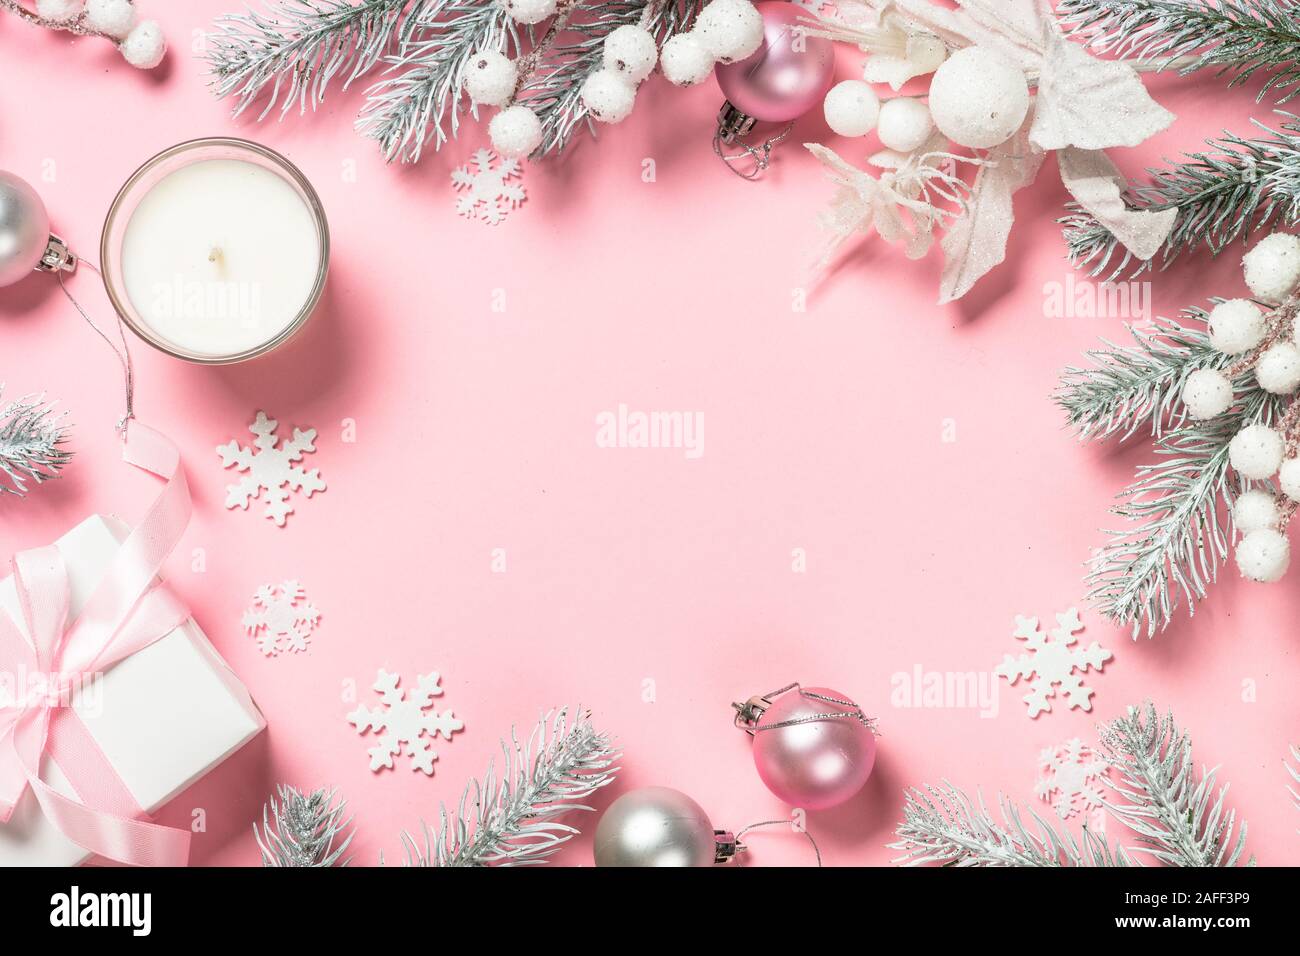 Với hộp quà Giáng sinh xinh xắn và đồ trang trí lung linh trên nền hồng, bạn sẽ có thể cảm nhận được không khí Noel tràn đầy niềm vui và yêu thương. Khám phá bức tranh đầy màu sắc và sự tinh tế trên Xmas background hồng ngay thôi!